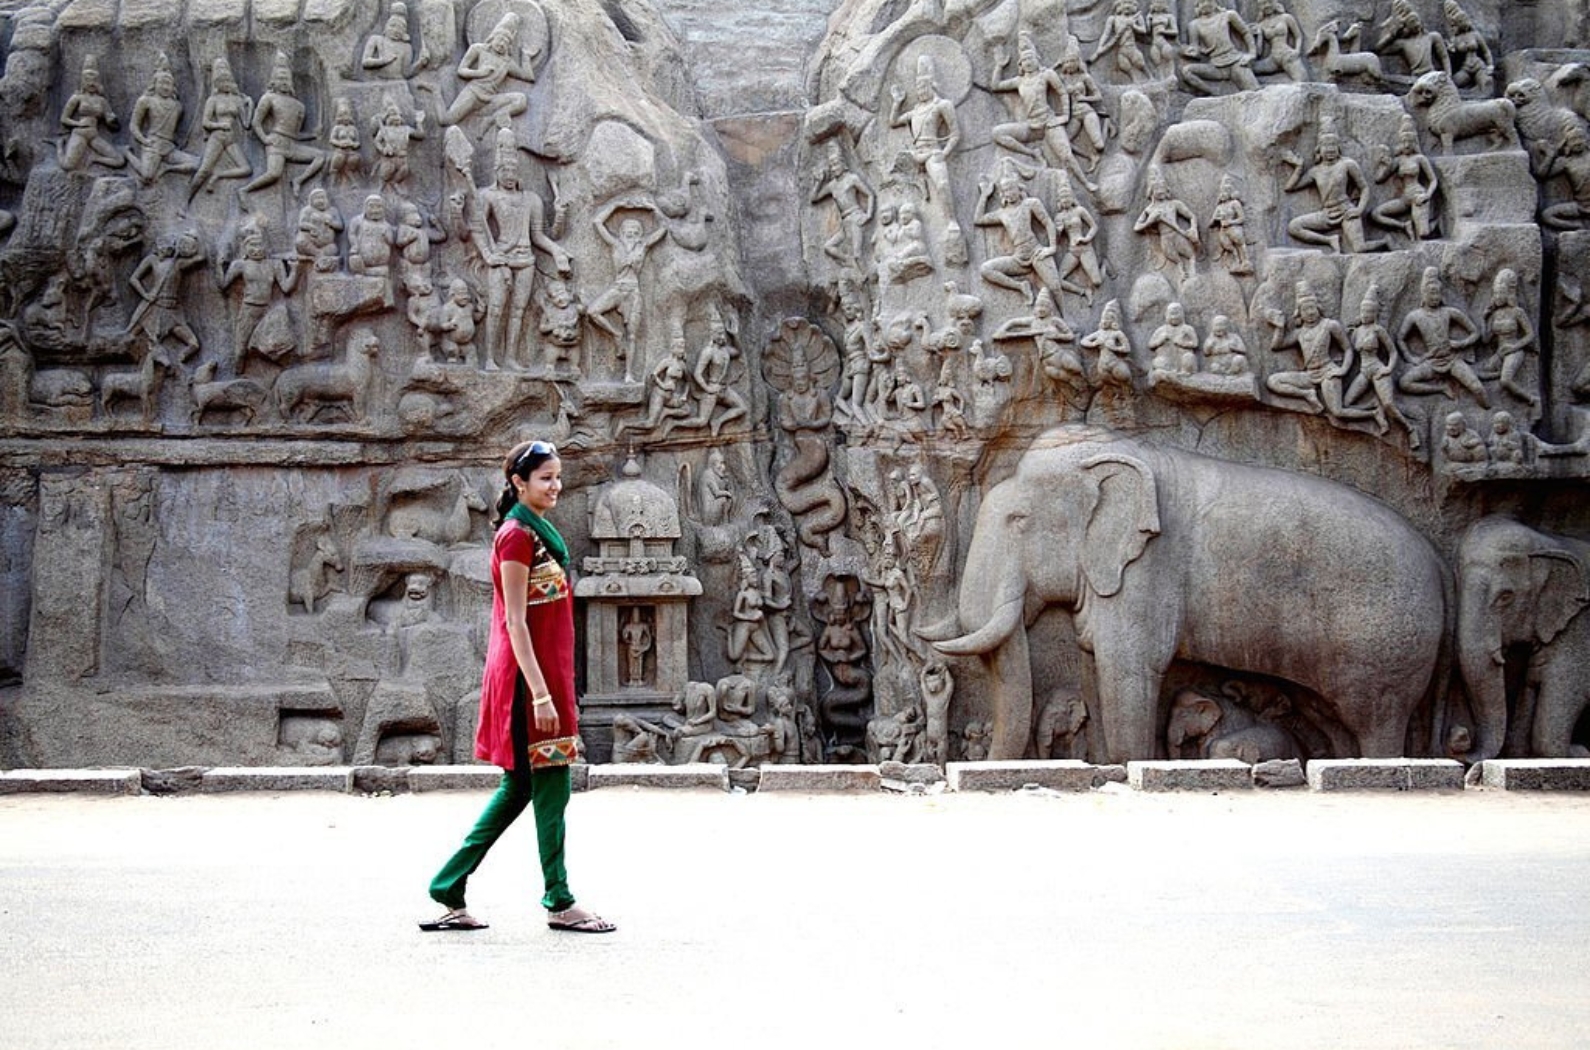 UNESCO World heritage site. Descent of the Ganges in Mahabalipuram.